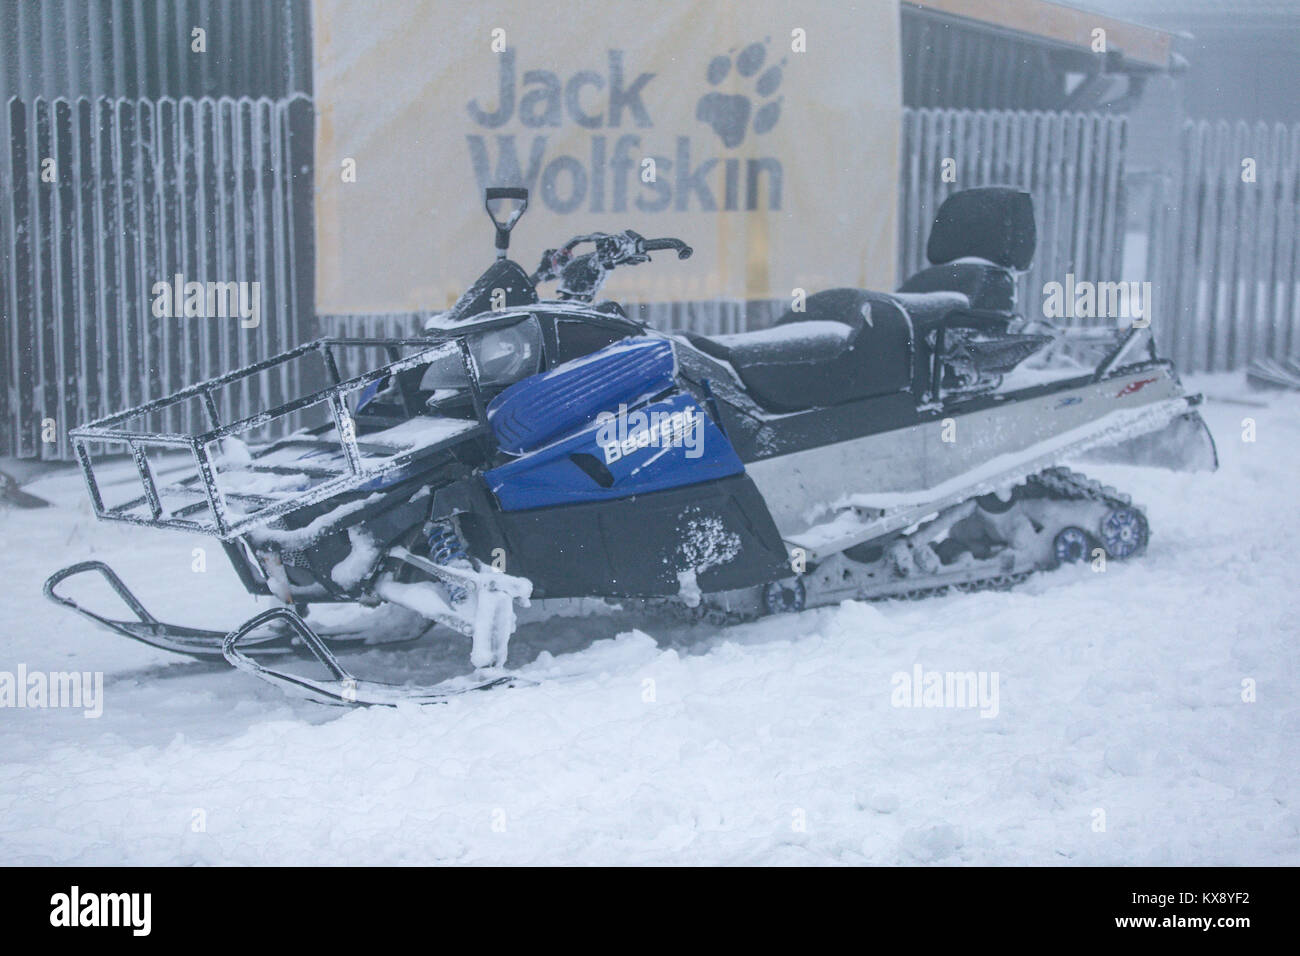 Ein schneemobil für Miete, die in schwierigen Bedingungen im Winter auf Schnee und Eis zu fahren. Foto auf einem Berg Skrzyczne, nachdem über Nacht Schneefall. Stockfoto